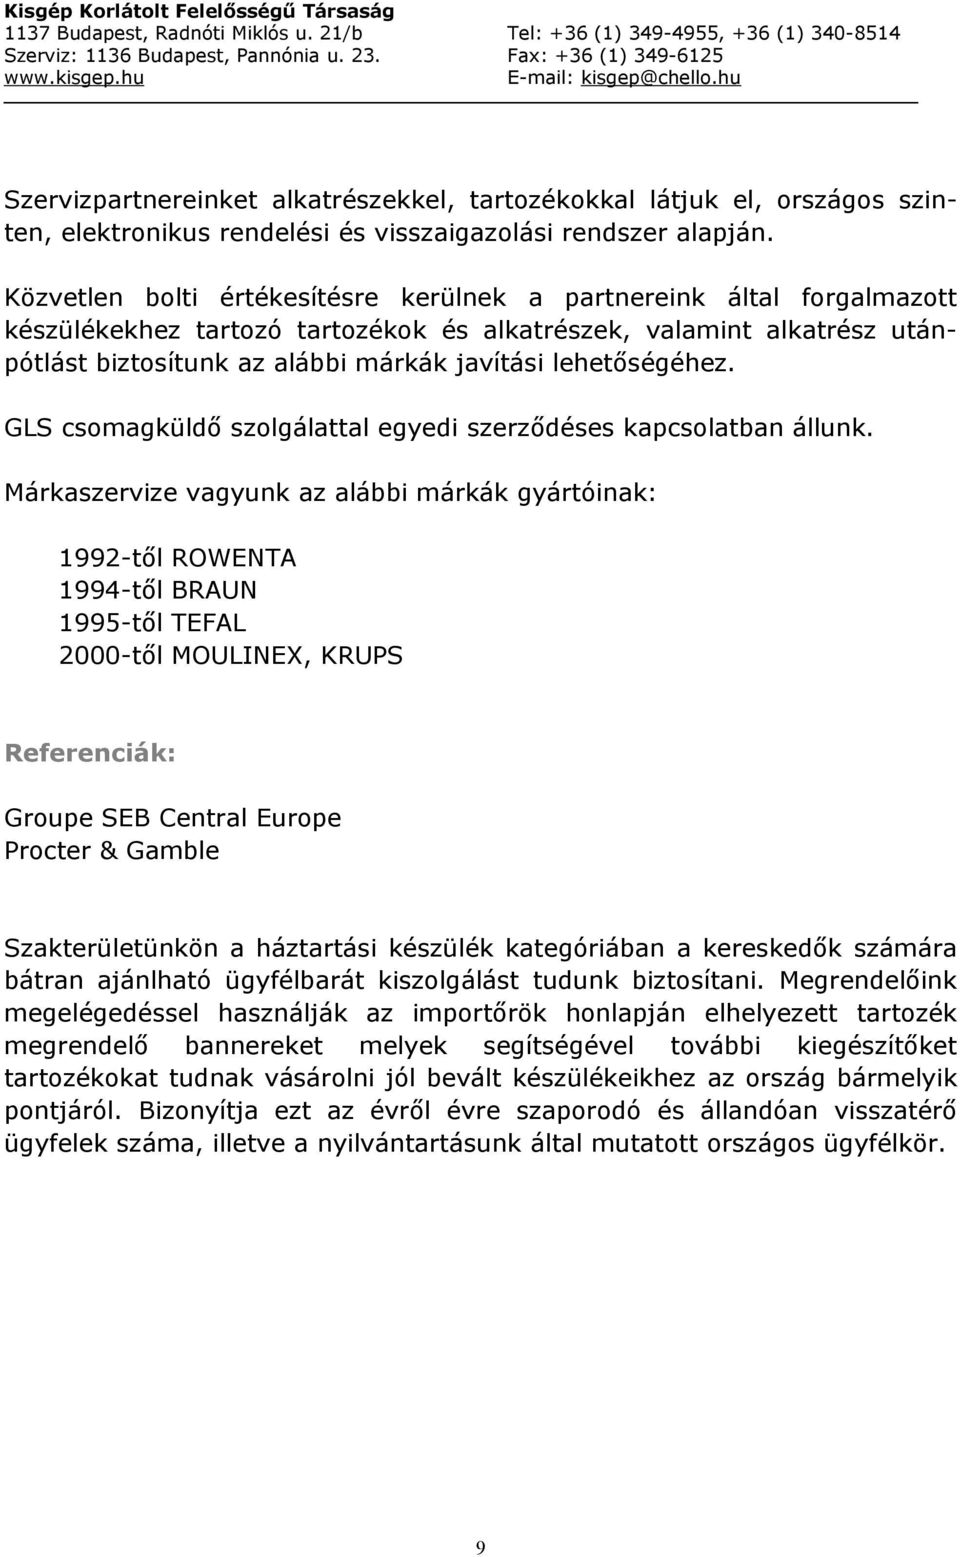 Kisgép Korlátolt Felelősségű Társaság. Kisgép Kft. Cégismertető - PDF  Ingyenes letöltés